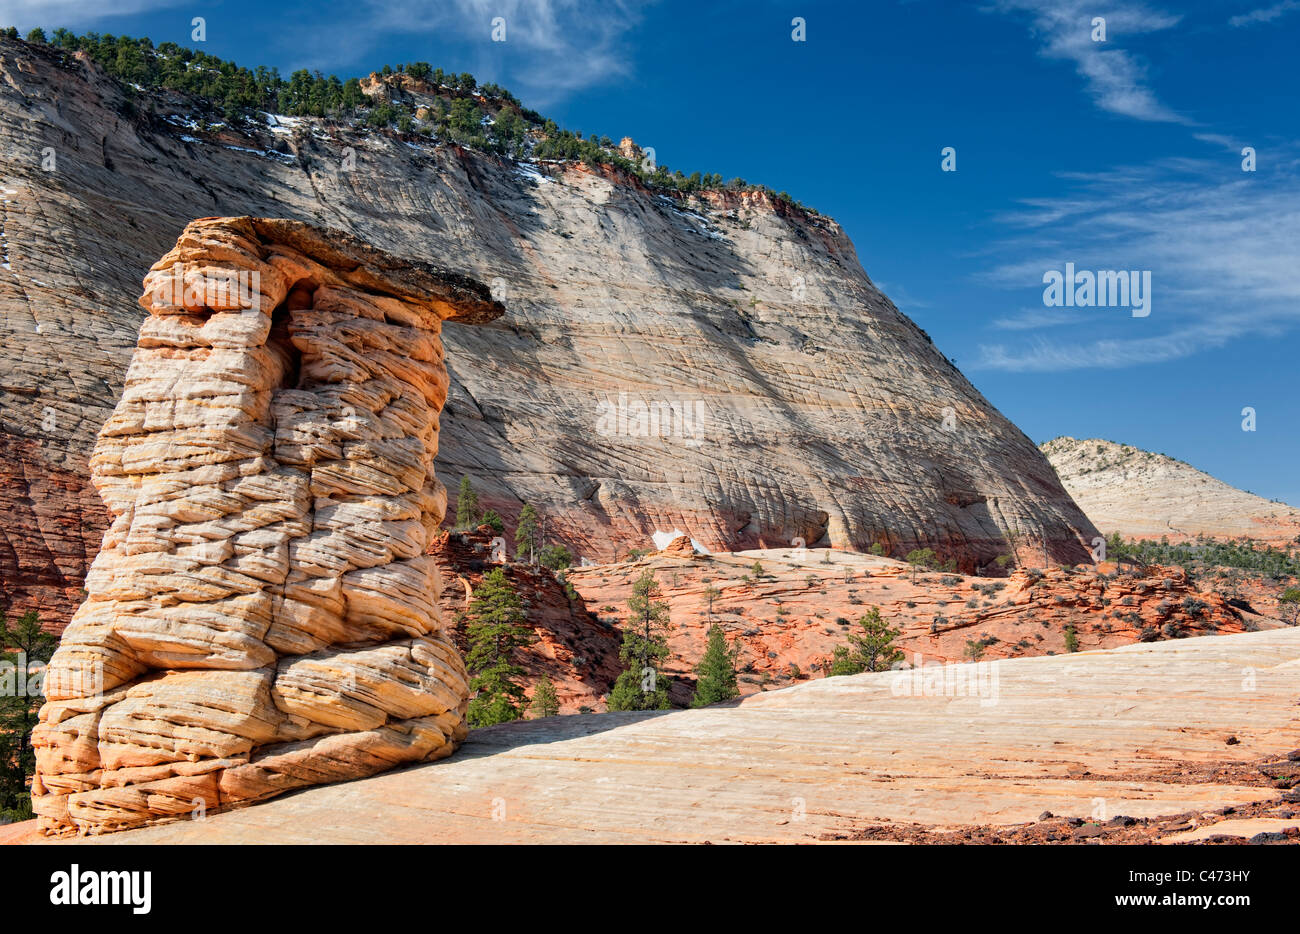 Monolithes de grès Navajo et érodé les cheminées en forme de dominer le côté est de l'Utah Zion National Park. Banque D'Images